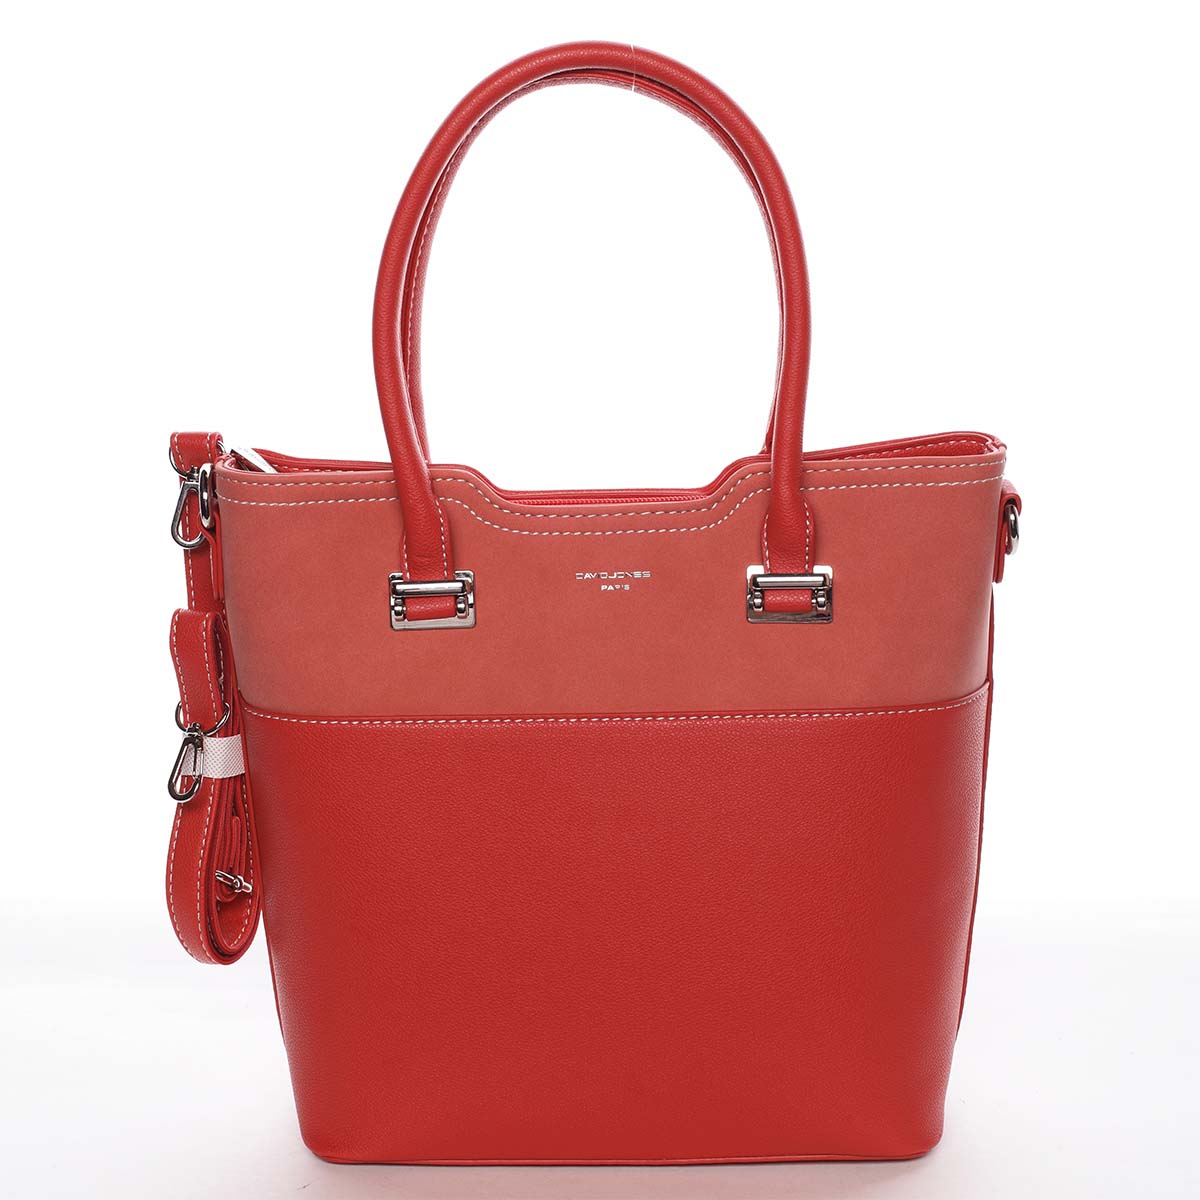 Dámská elegantní a módní červená kabelka - David Jones Sandy